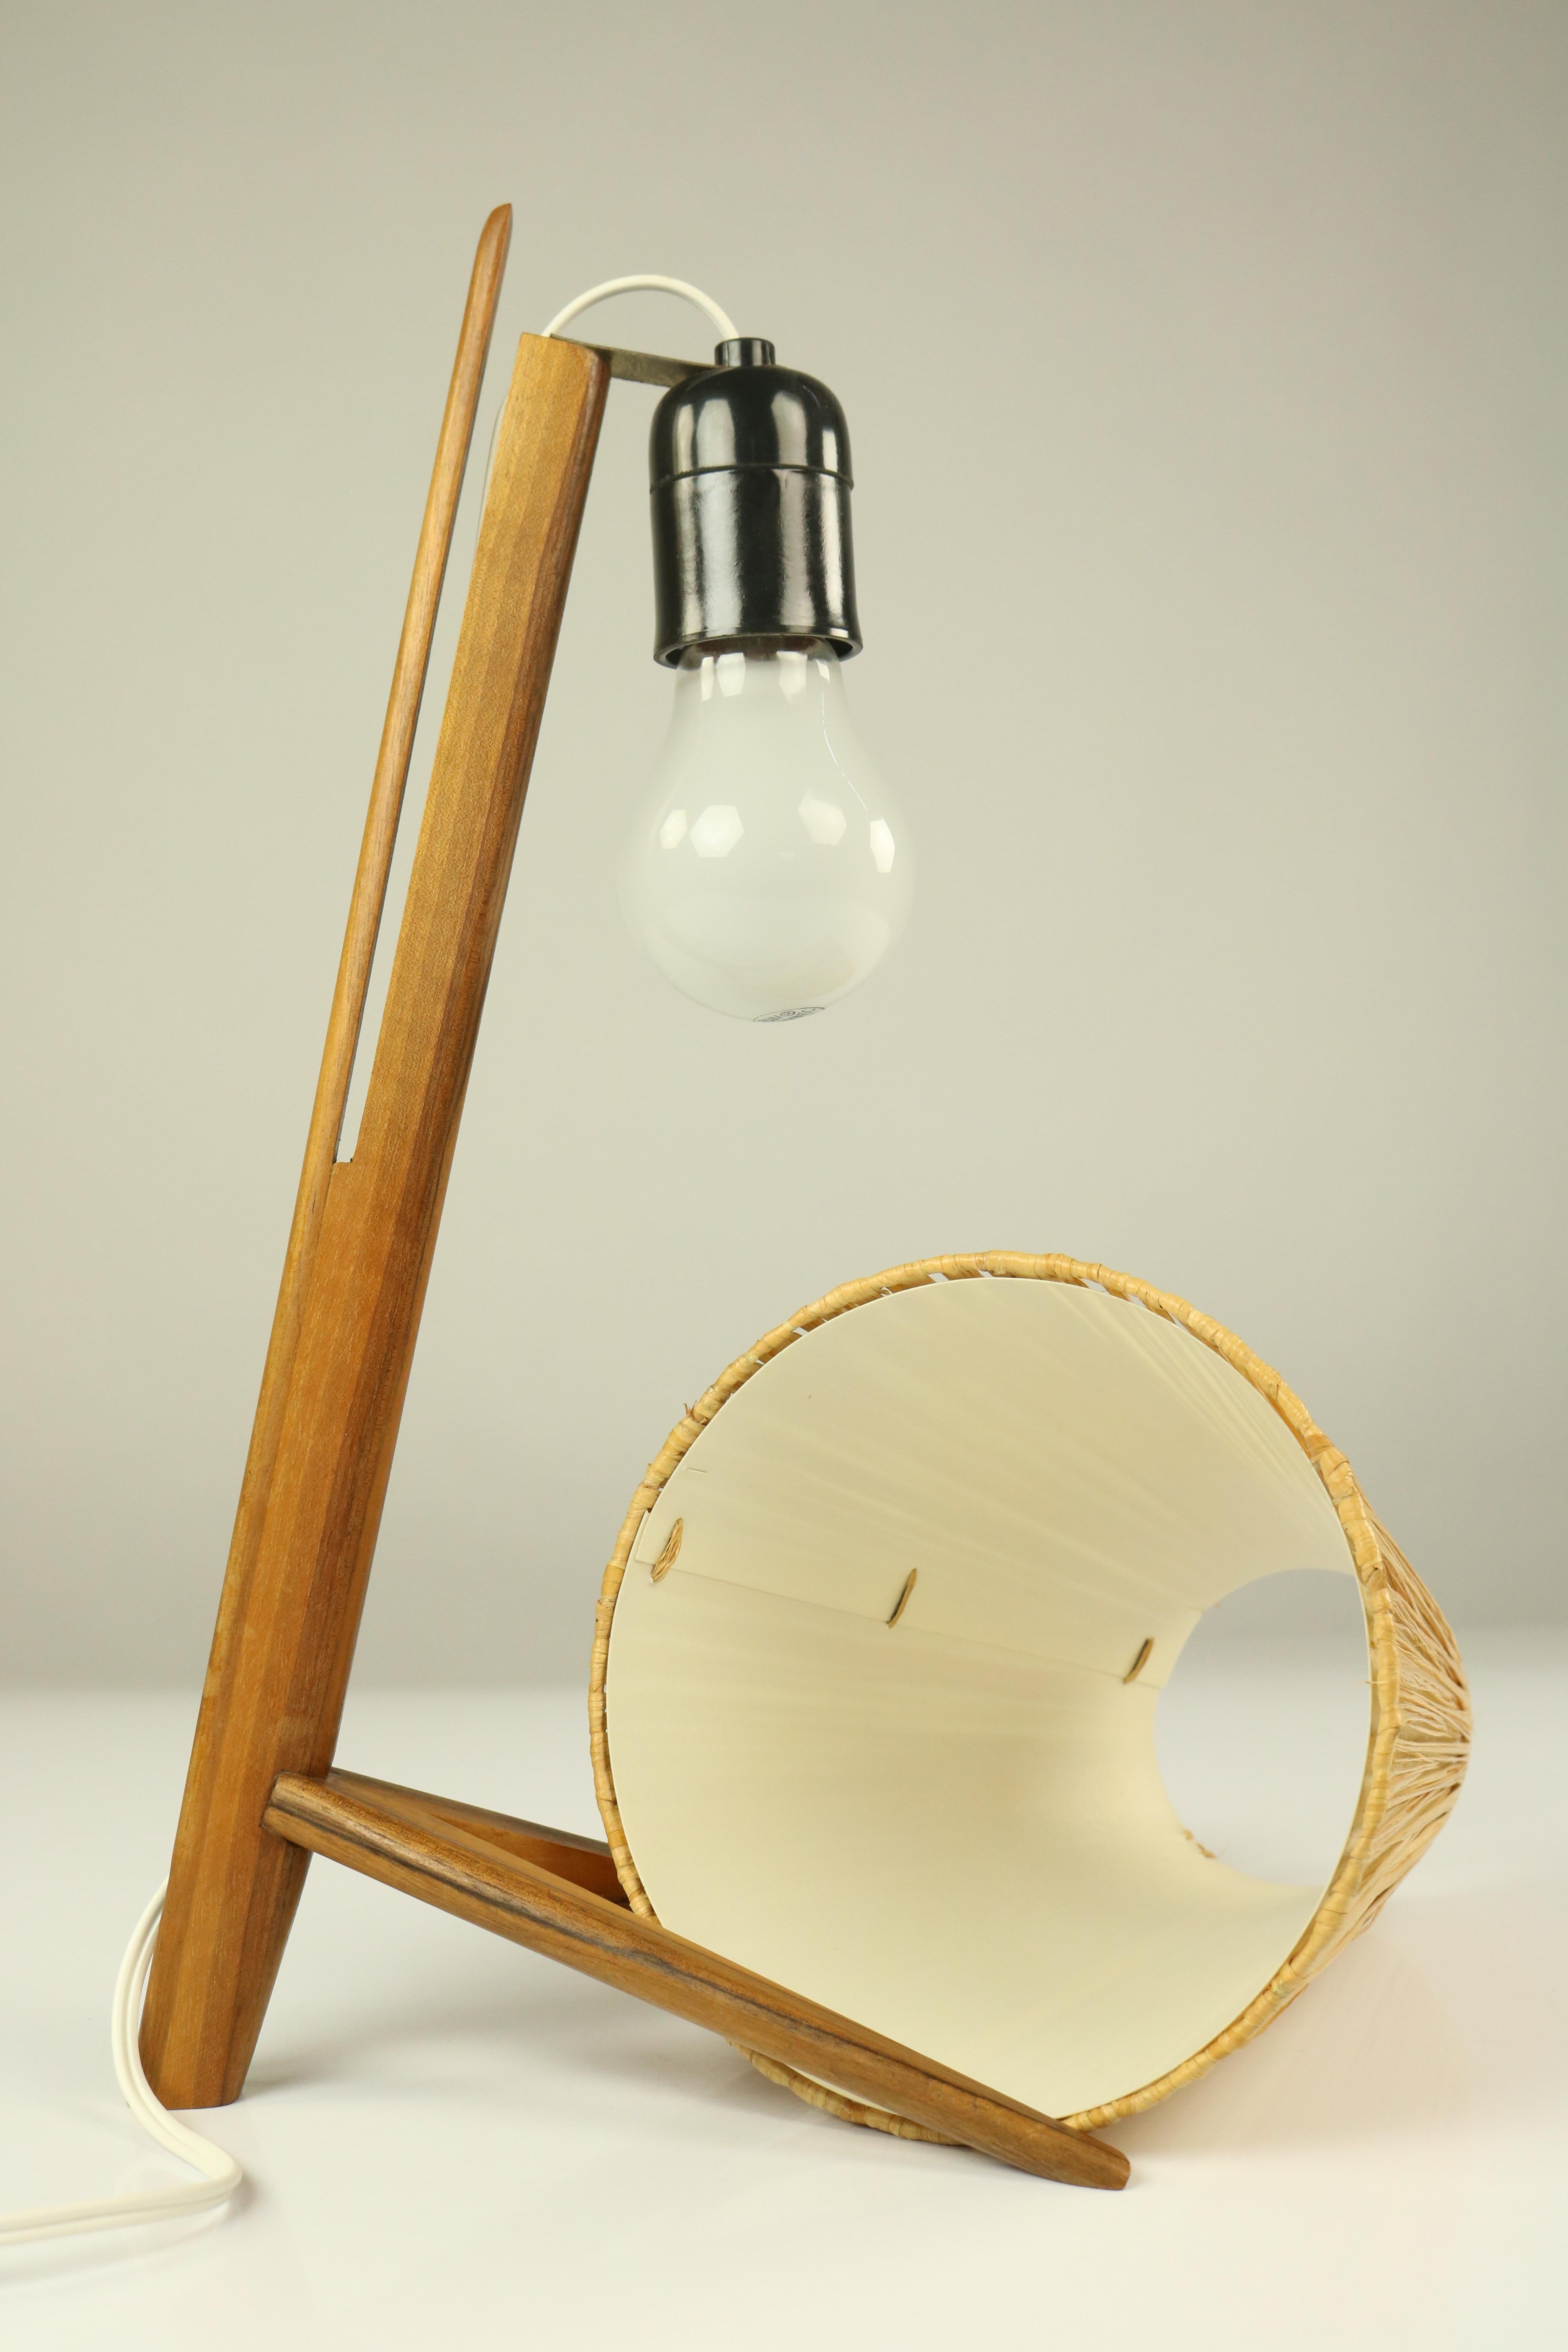 Vintage Teak Table Lamp Crow Foot & Bast Shade Midcentury 1950s Austria Kalmar For Sale 2